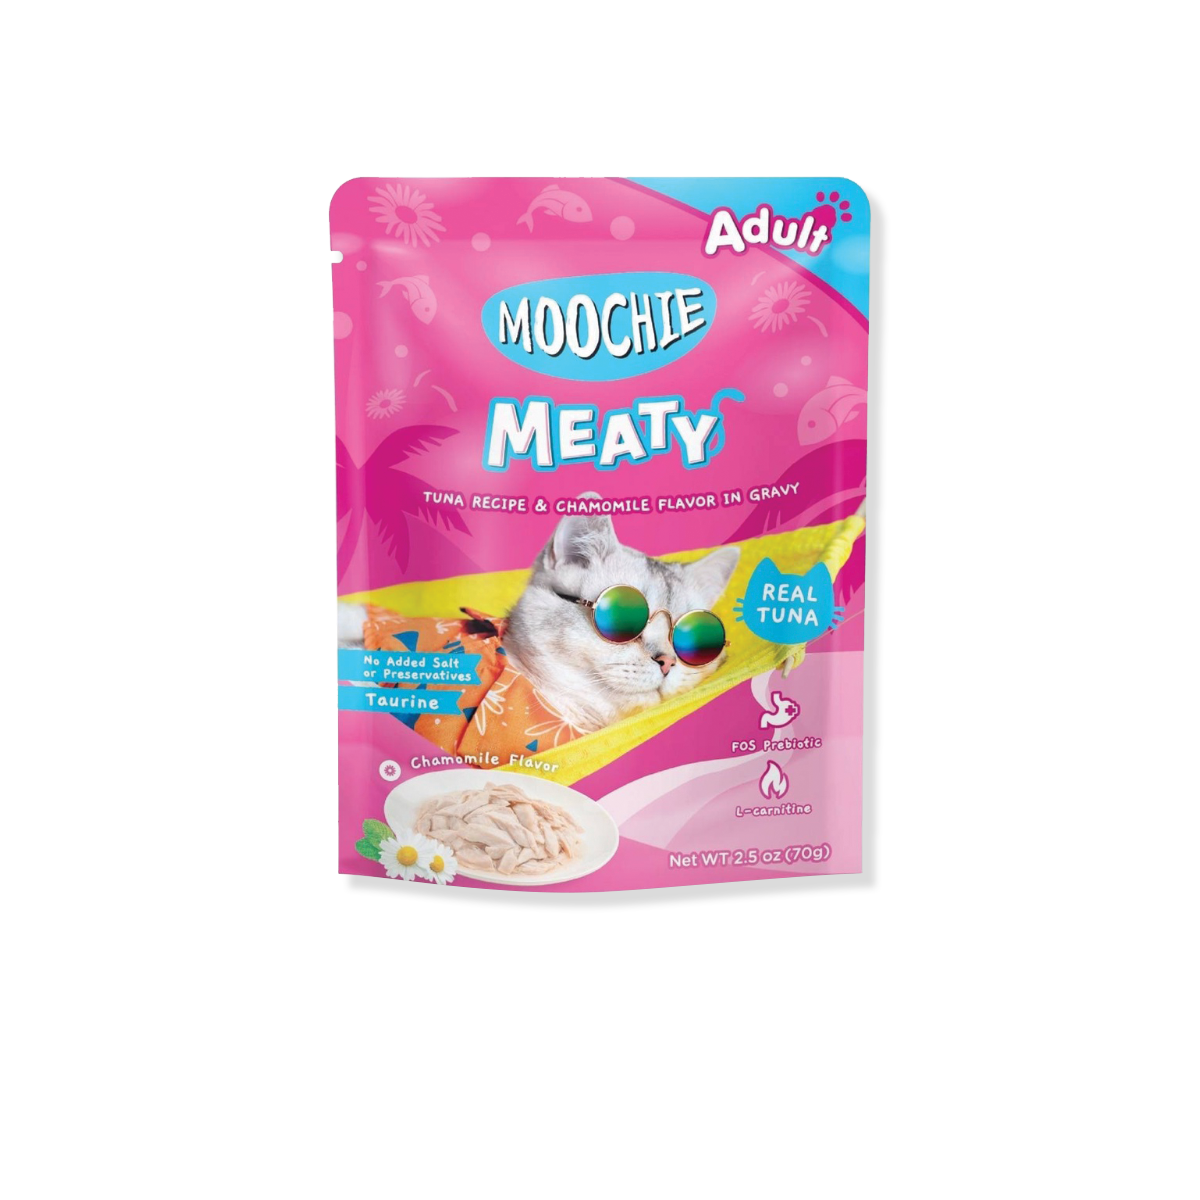 MOOCHIE Meaty Tuna Recipe in gravy Adult มูชี่ มีทตี้ อาหารเปียกแมว รสทูน่าในเกรวี่ ขนาด 70 กรัม (12 ซอง)